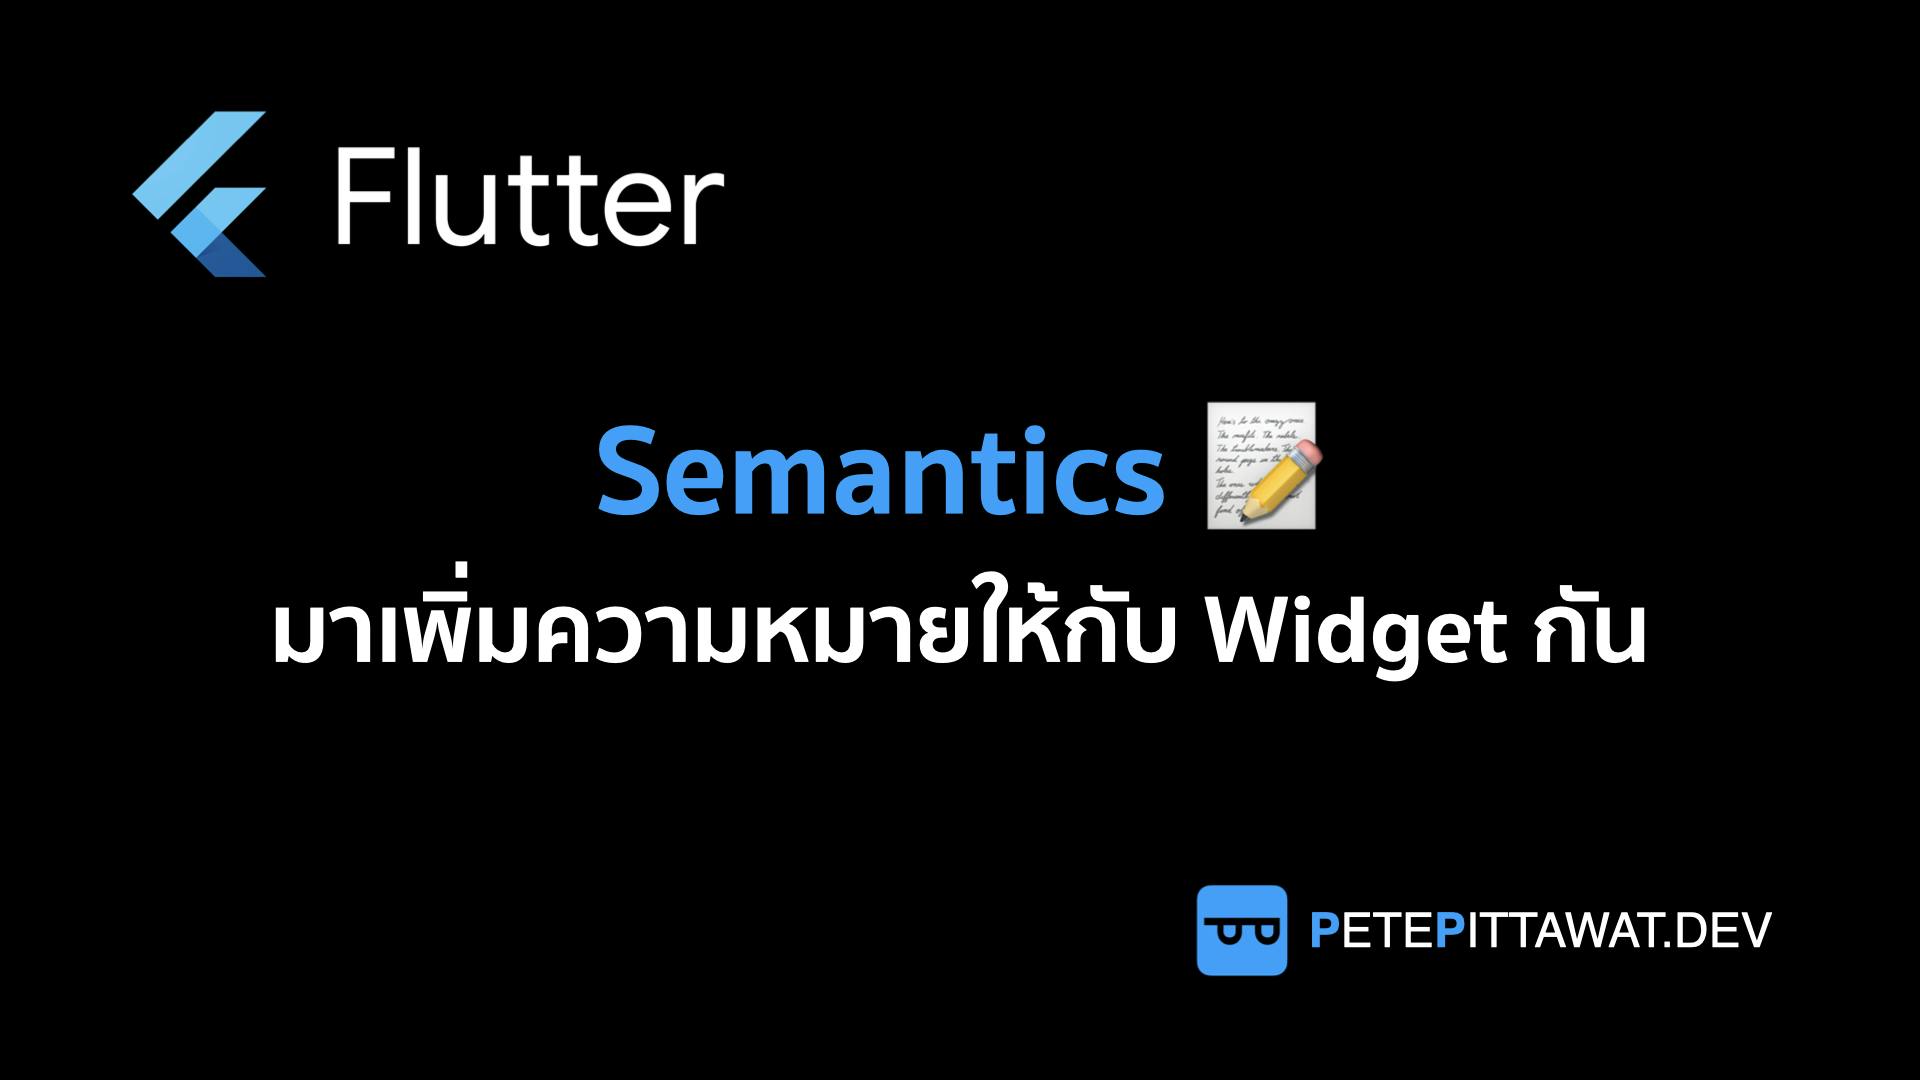 Cover Image for Flutter: Semantics